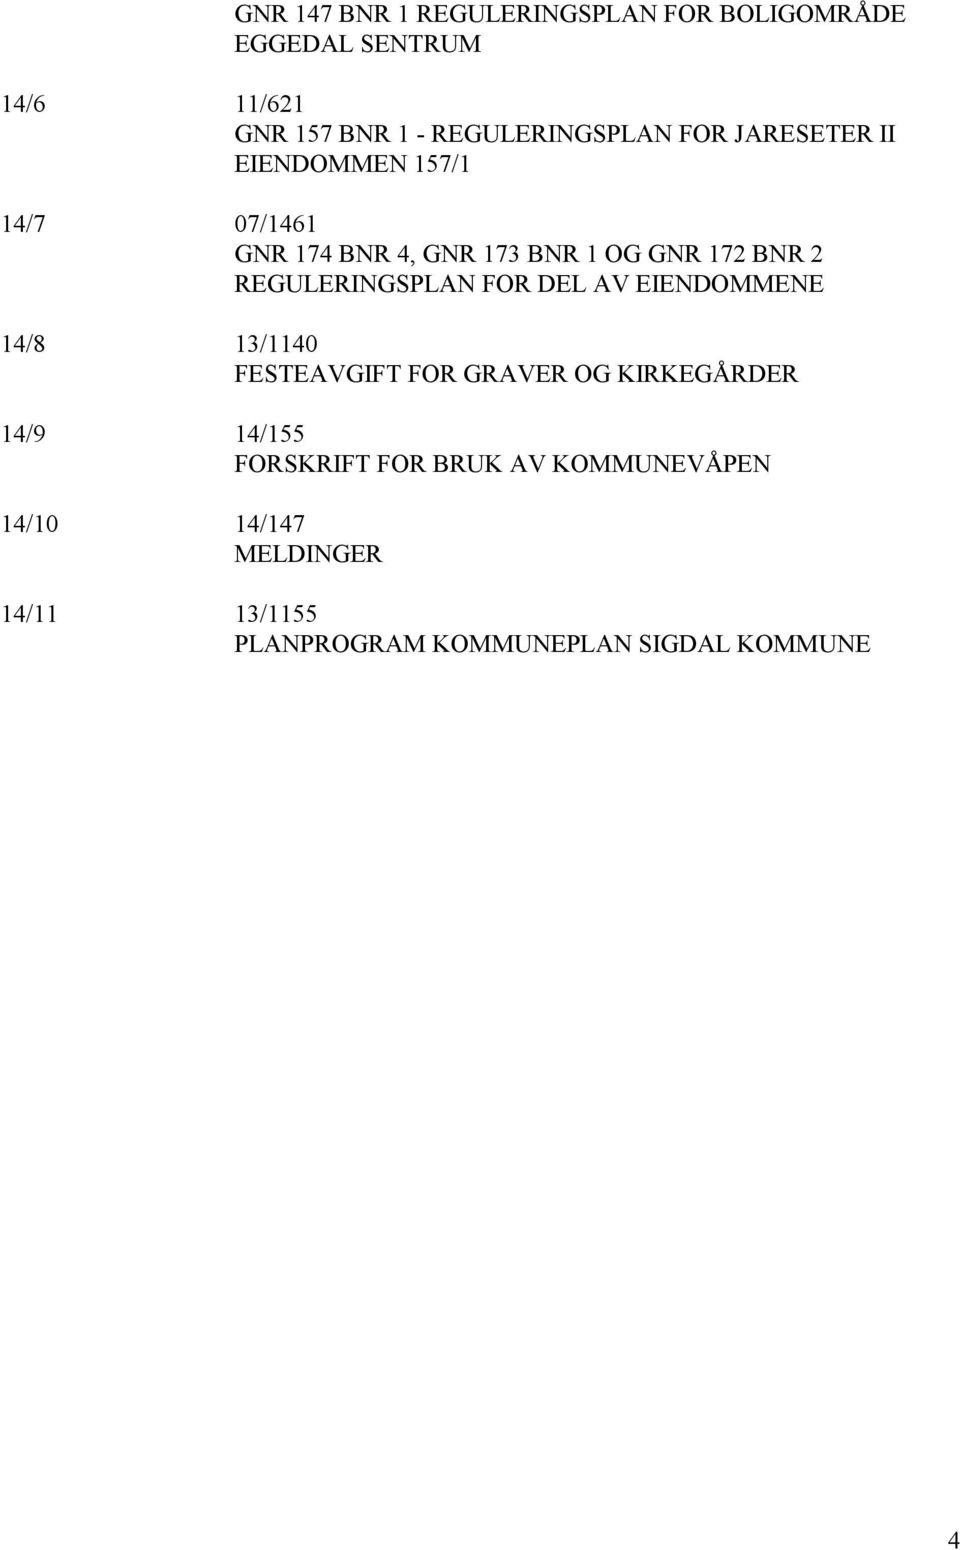 BNR 2 REGULERINGSPLAN FOR DEL AV EIENDOMMENE 14/8 13/1140 FESTEAVGIFT FOR GRAVER OG KIRKEGÅRDER 14/9